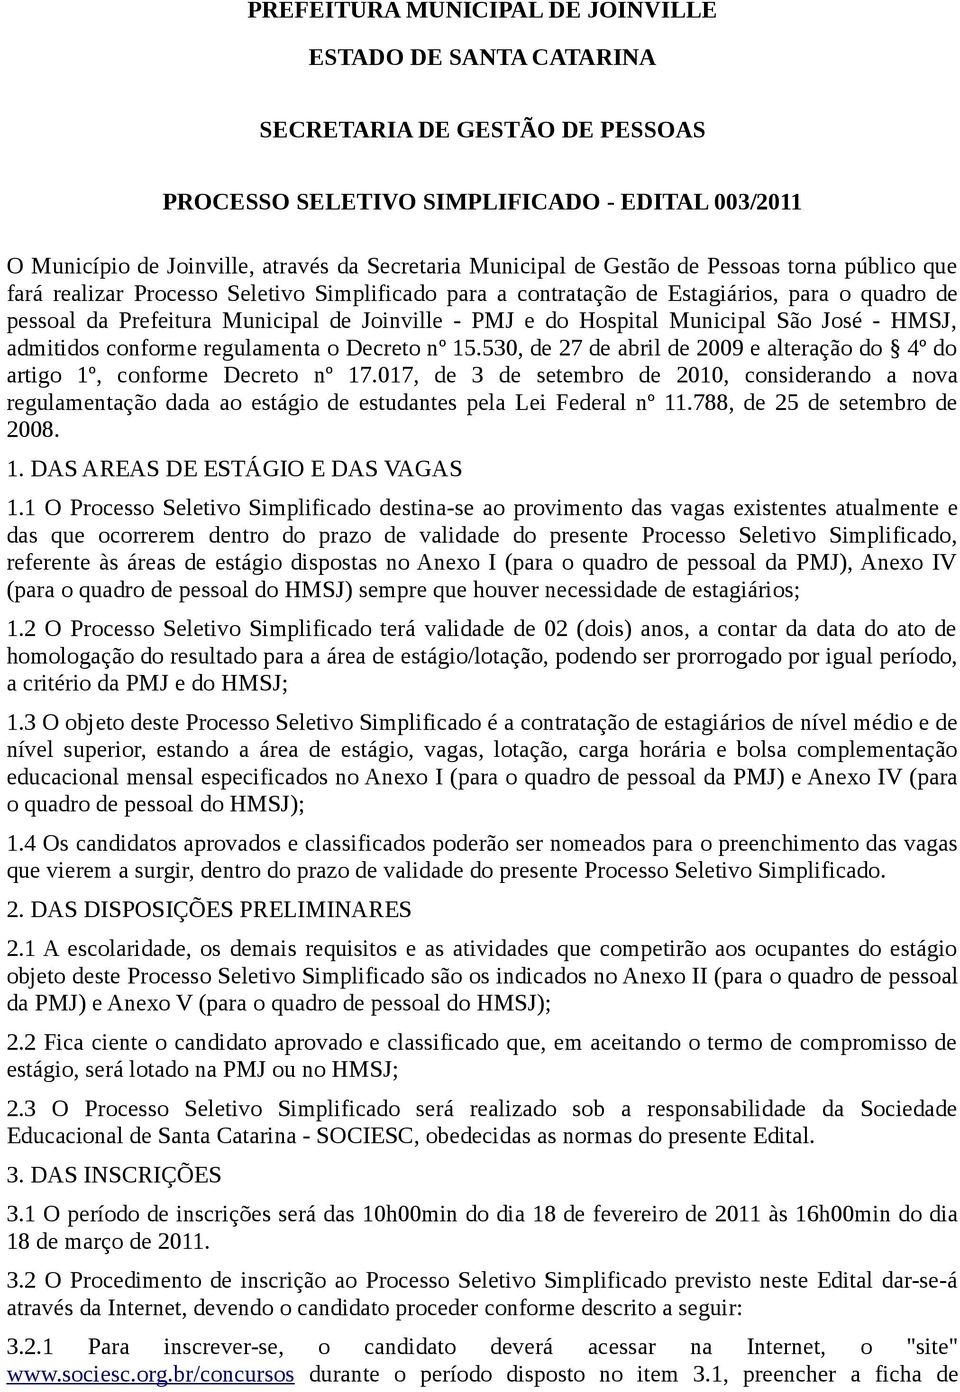 Hospital Municipal São José - HMSJ, admitidos conforme regulamenta o Decreto nº 15.530, de 27 de abril de 2009 e alteração do 4º do artigo 1º, conforme Decreto nº 17.